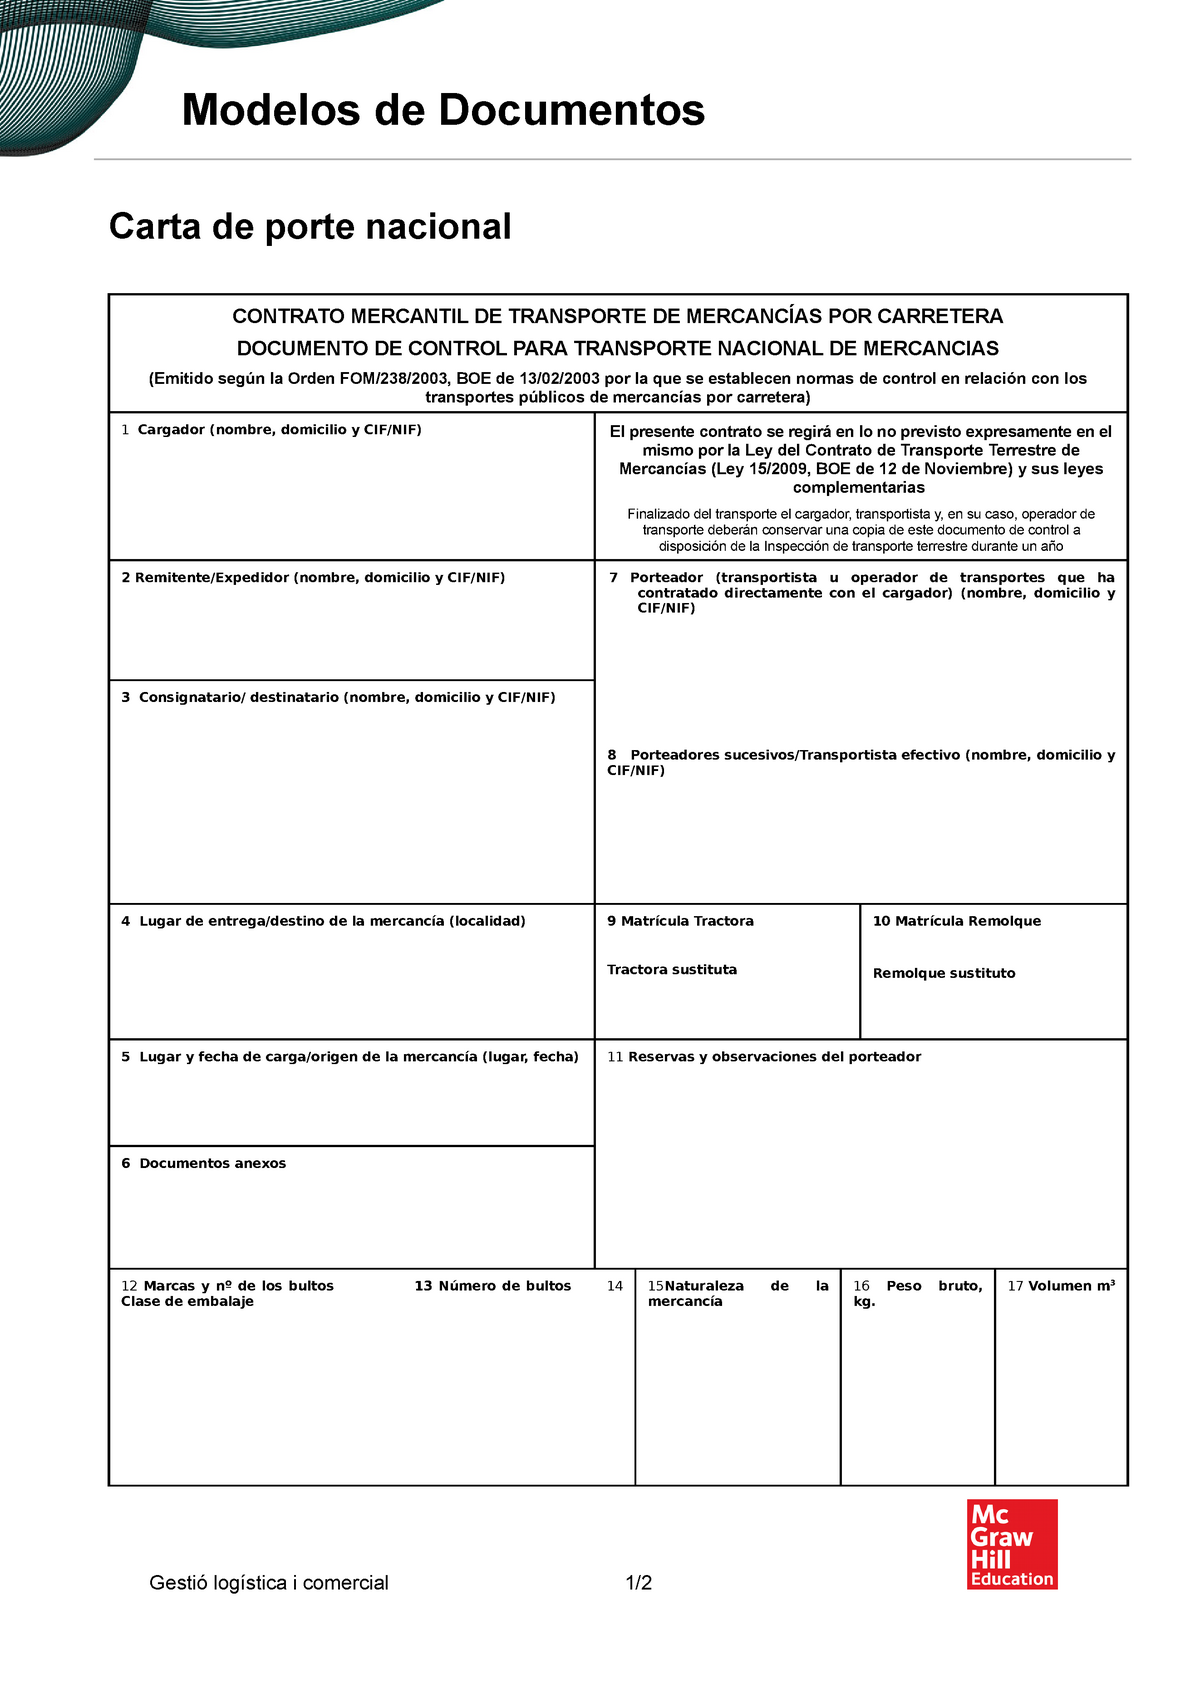 Carta de porte nacional - Modelos de Documentos Carta de porte nacional  CONTRATO MERCANTIL DE - Studocu